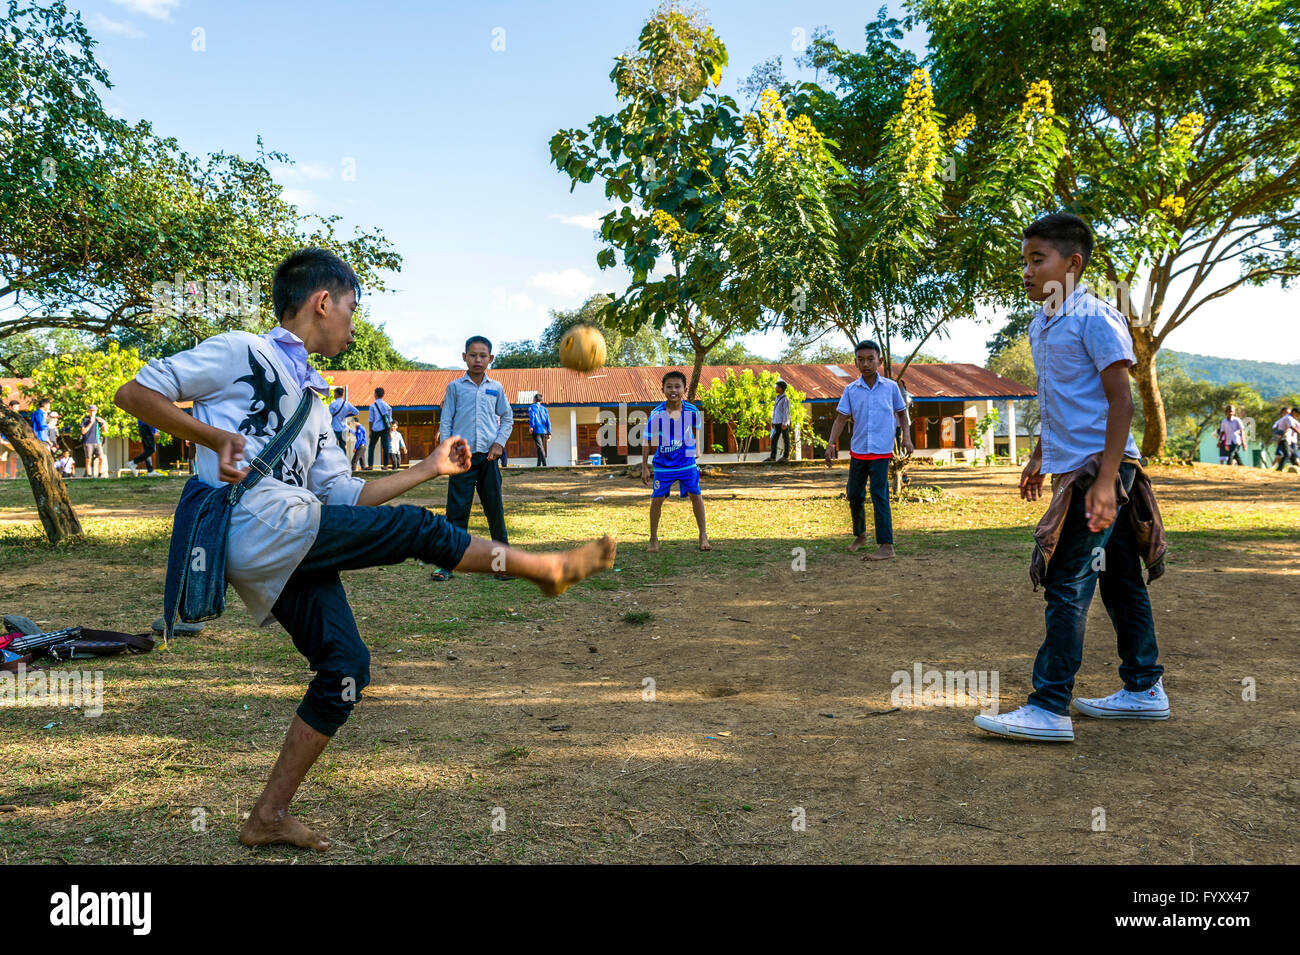 L'Asie. L'Asie du Sud-Est. Le Laos. Province de Luang Prabang. L'école primaire dans un village rural. Jeunes garçons jouent au Sepak Takraw. Banque D'Images